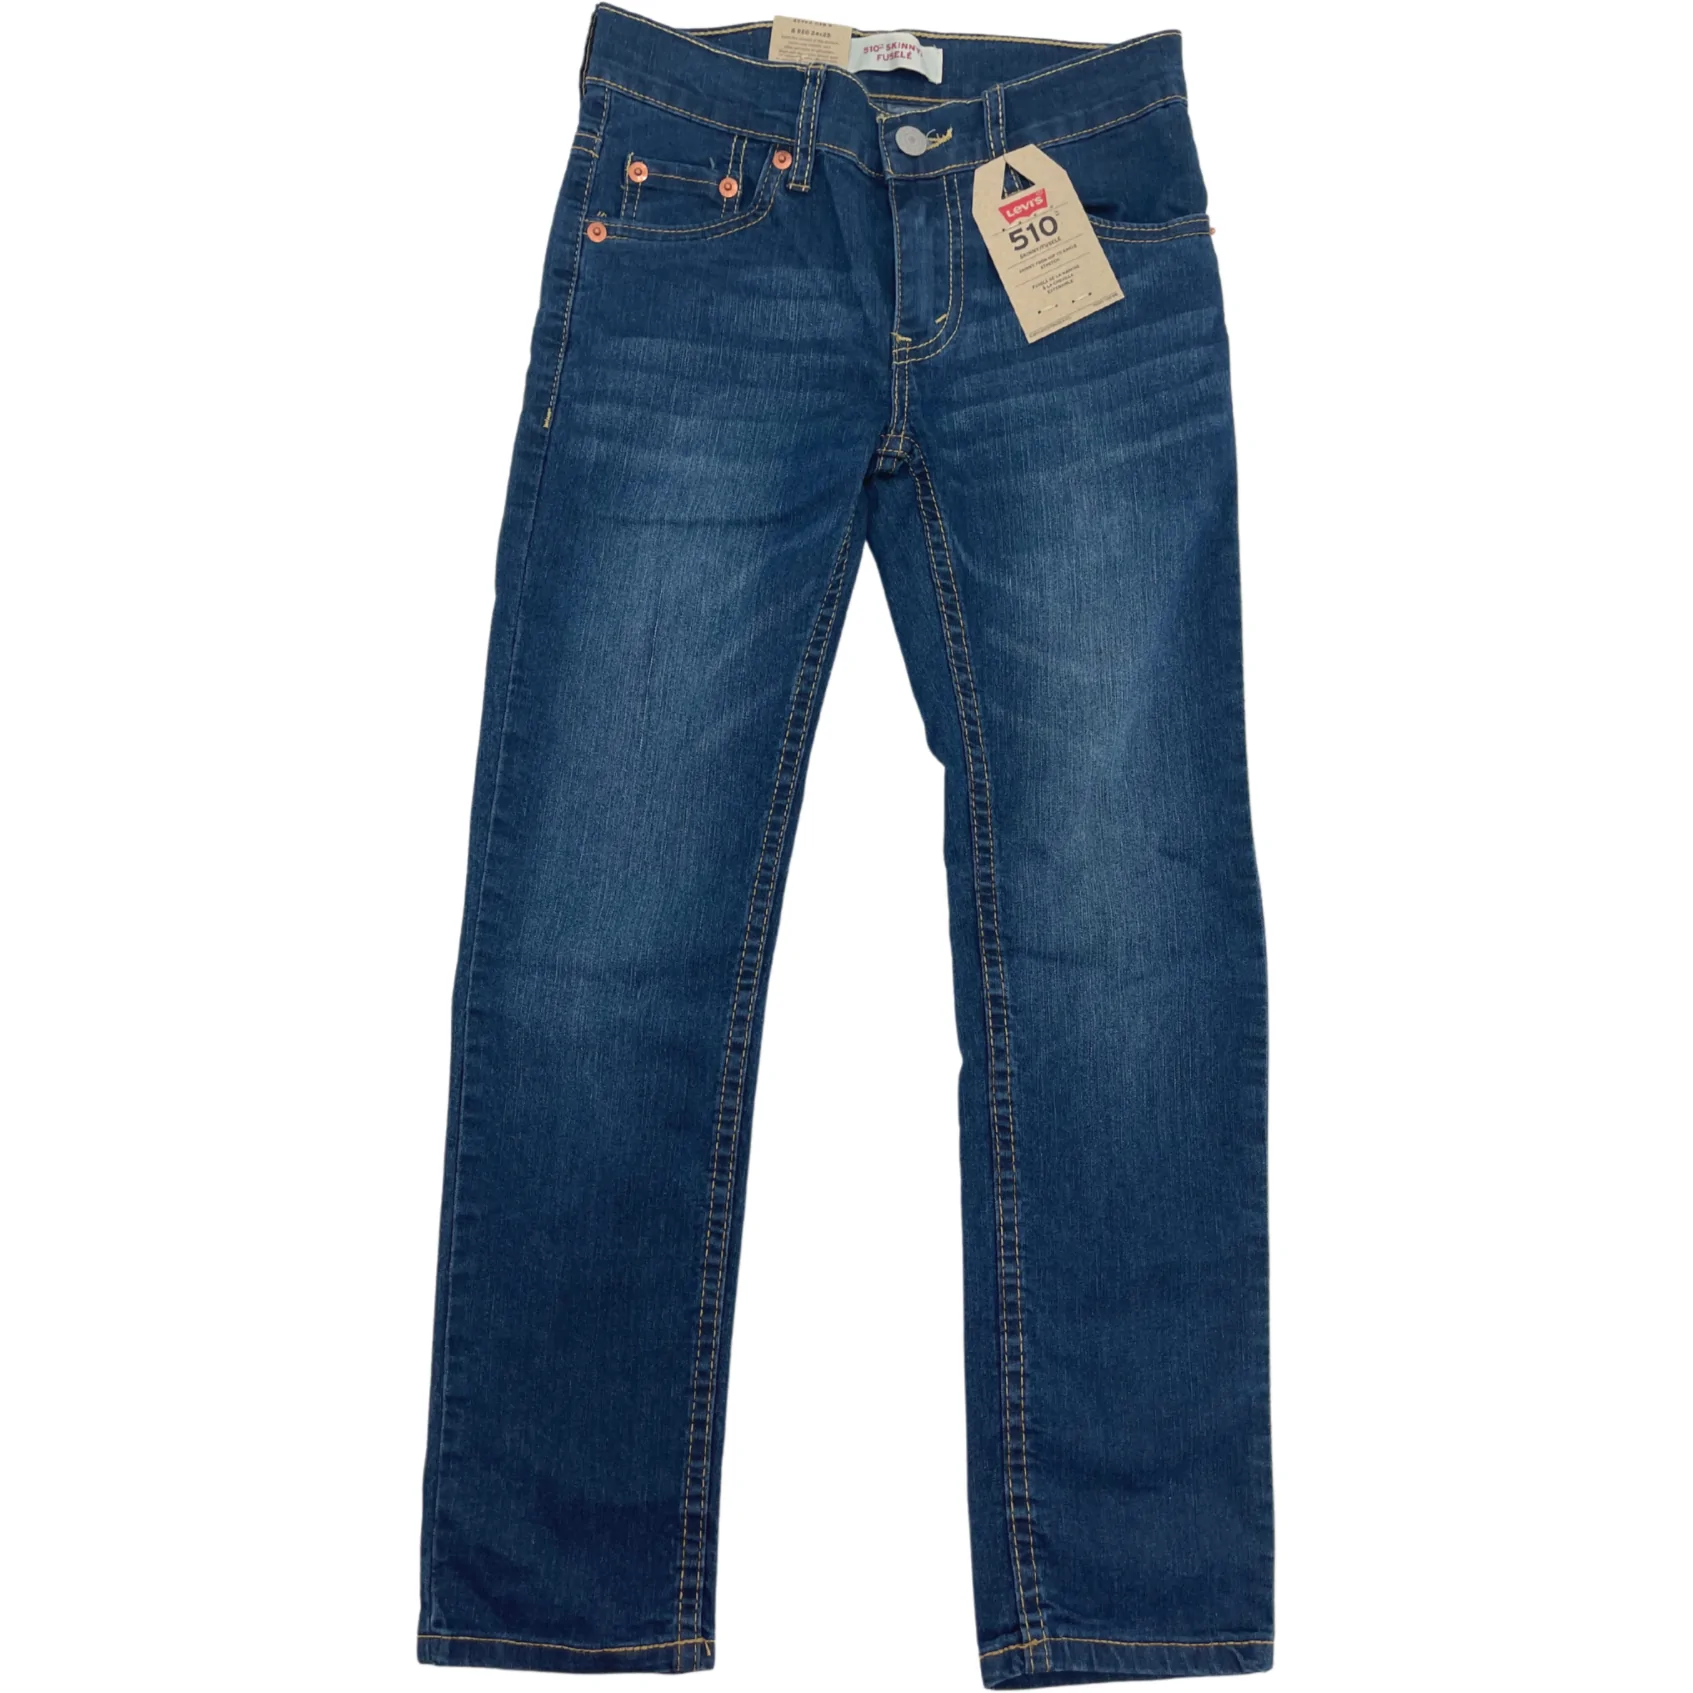 Levi's Girl's Jeans / Skinny Jeans / Blue Denim / Size 8